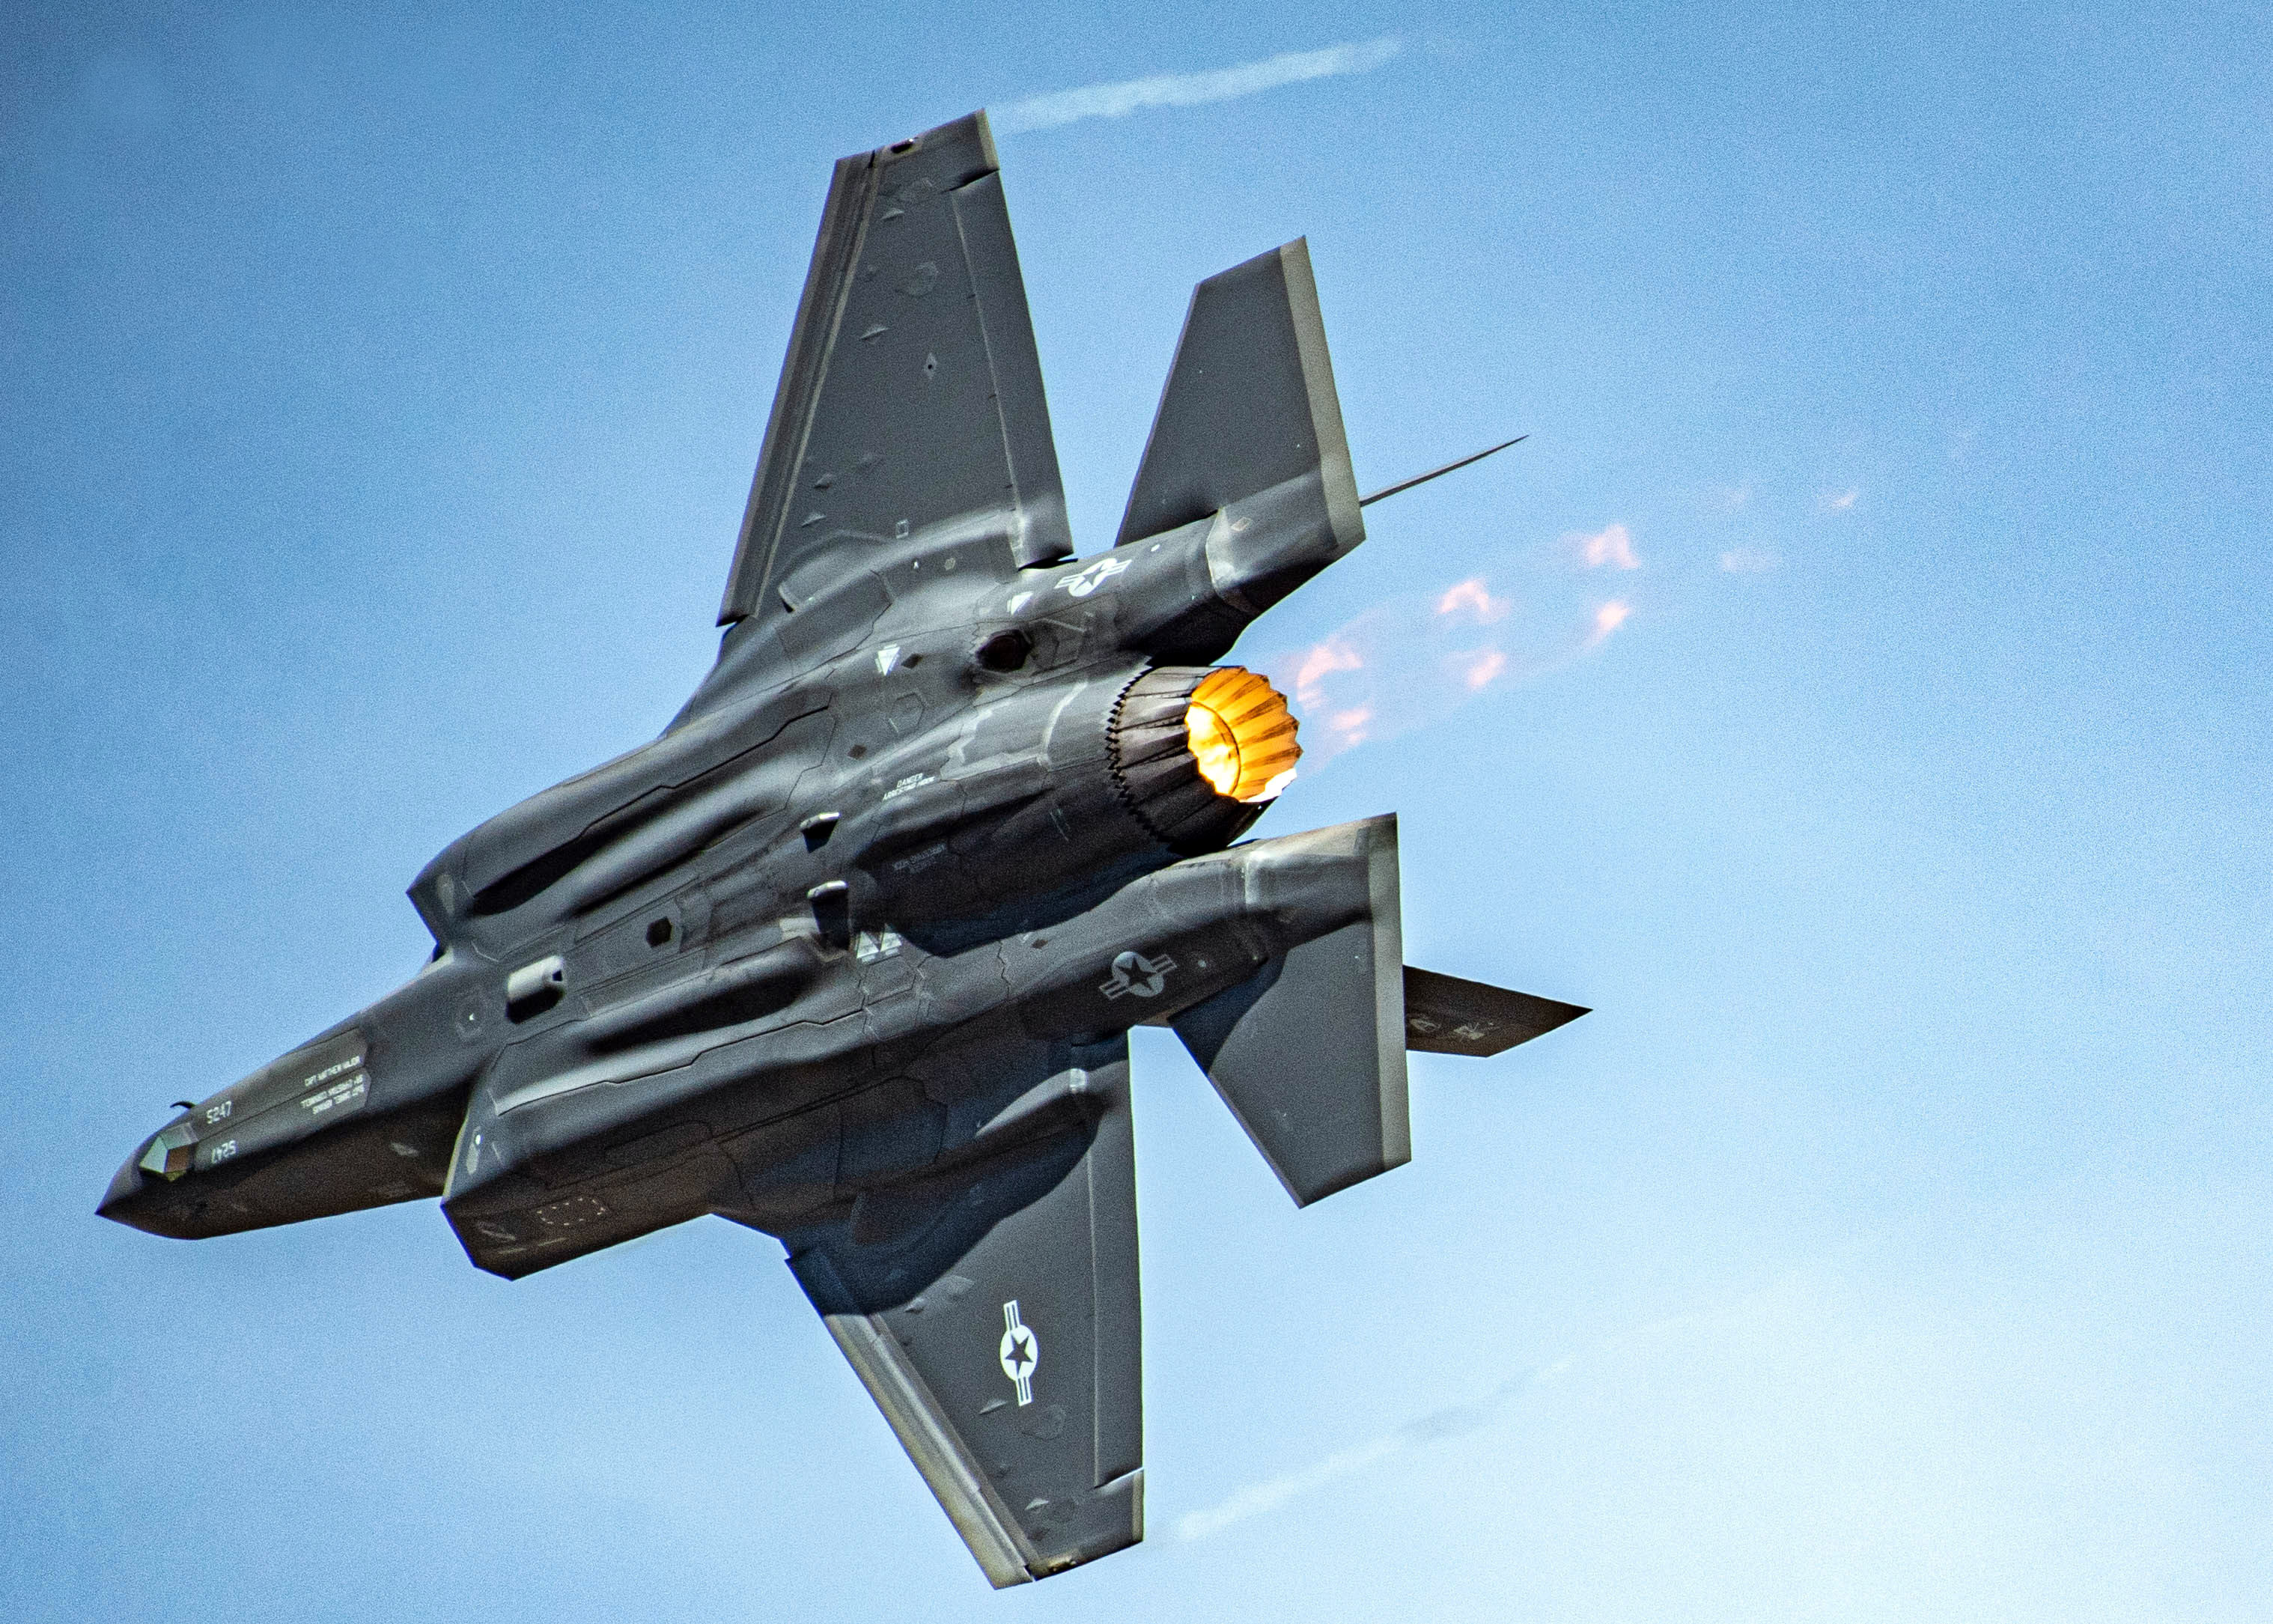 Pratt & Whitney dostanie kolejne 75 mln dolarów na modernizację silnika F135 dla myśliwców F-35 Lightning II